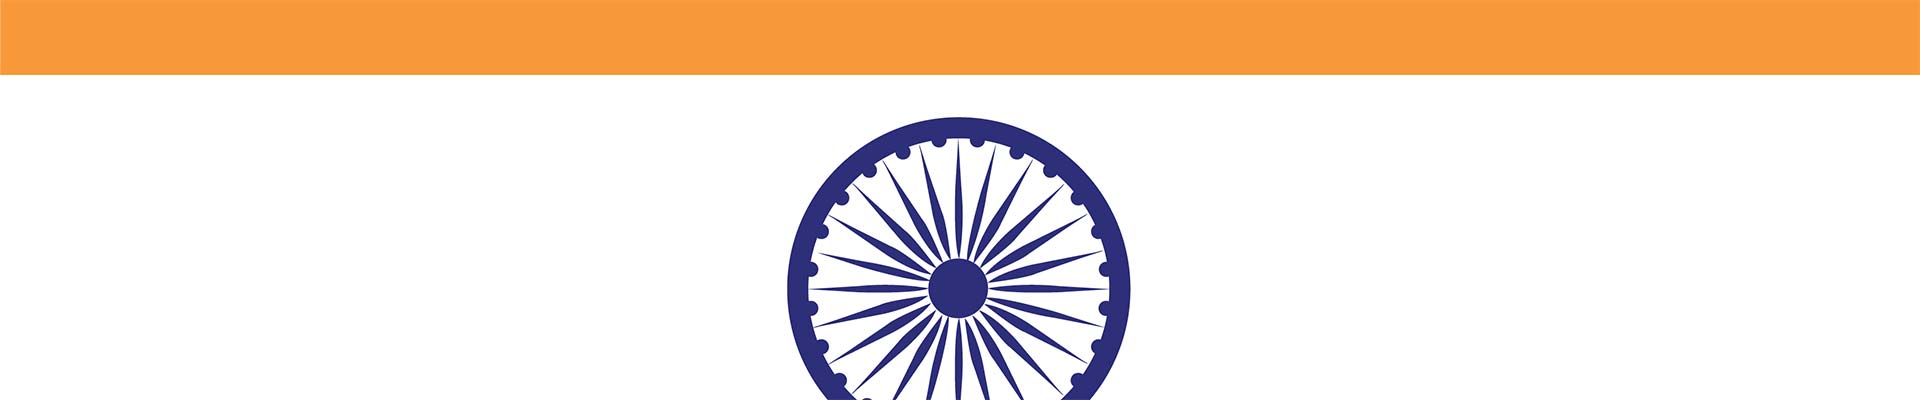 Часть индийского флага